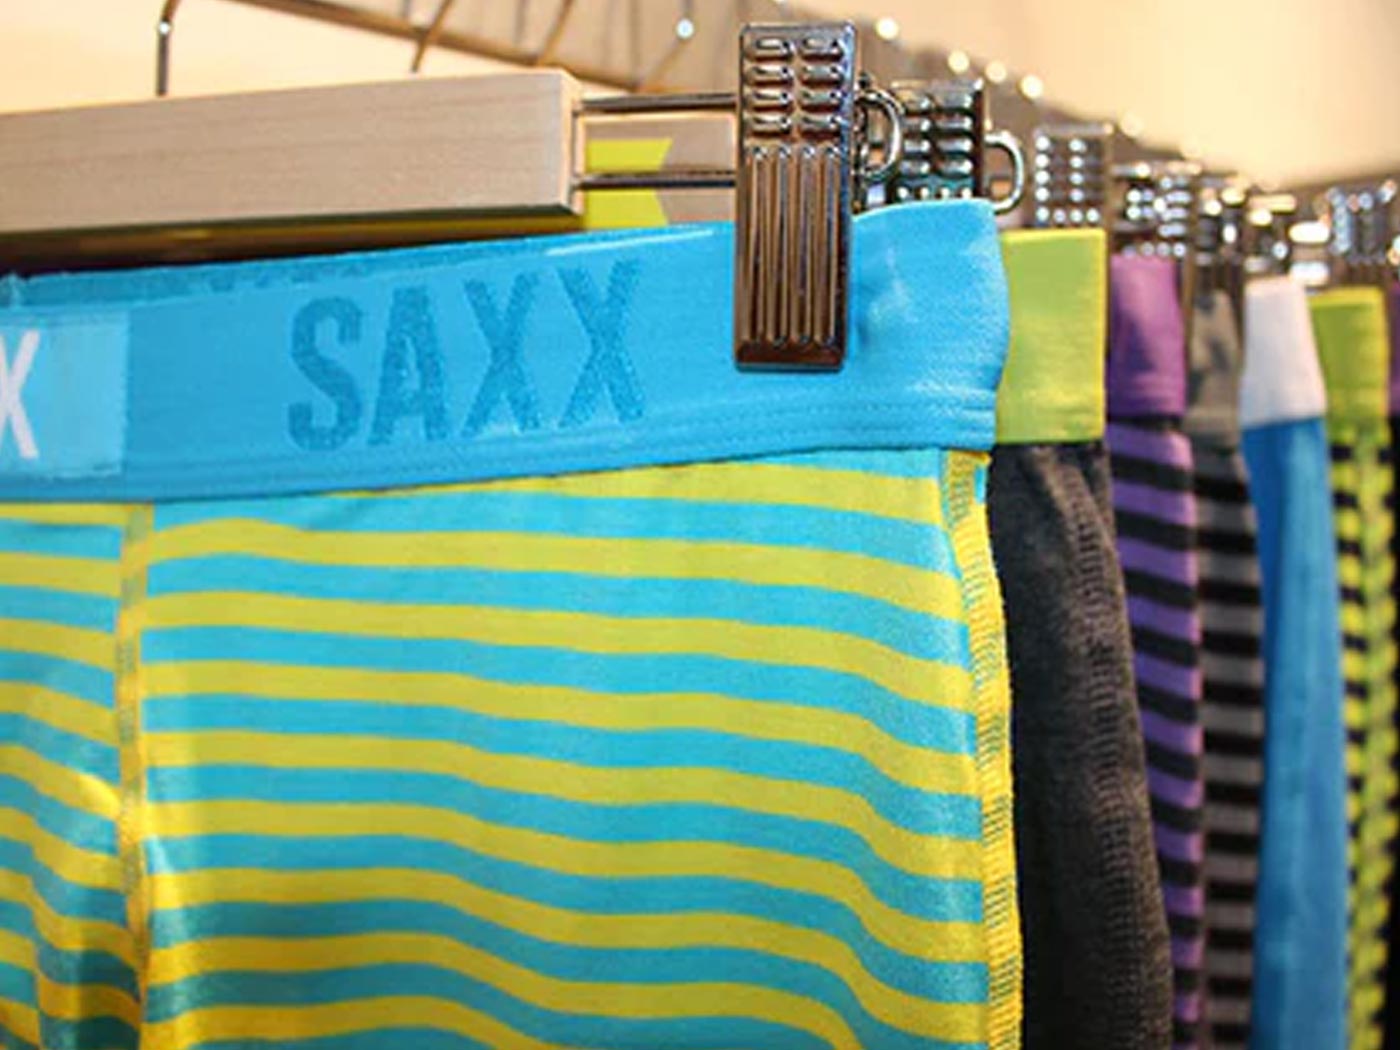 Saxx Men's Underwear